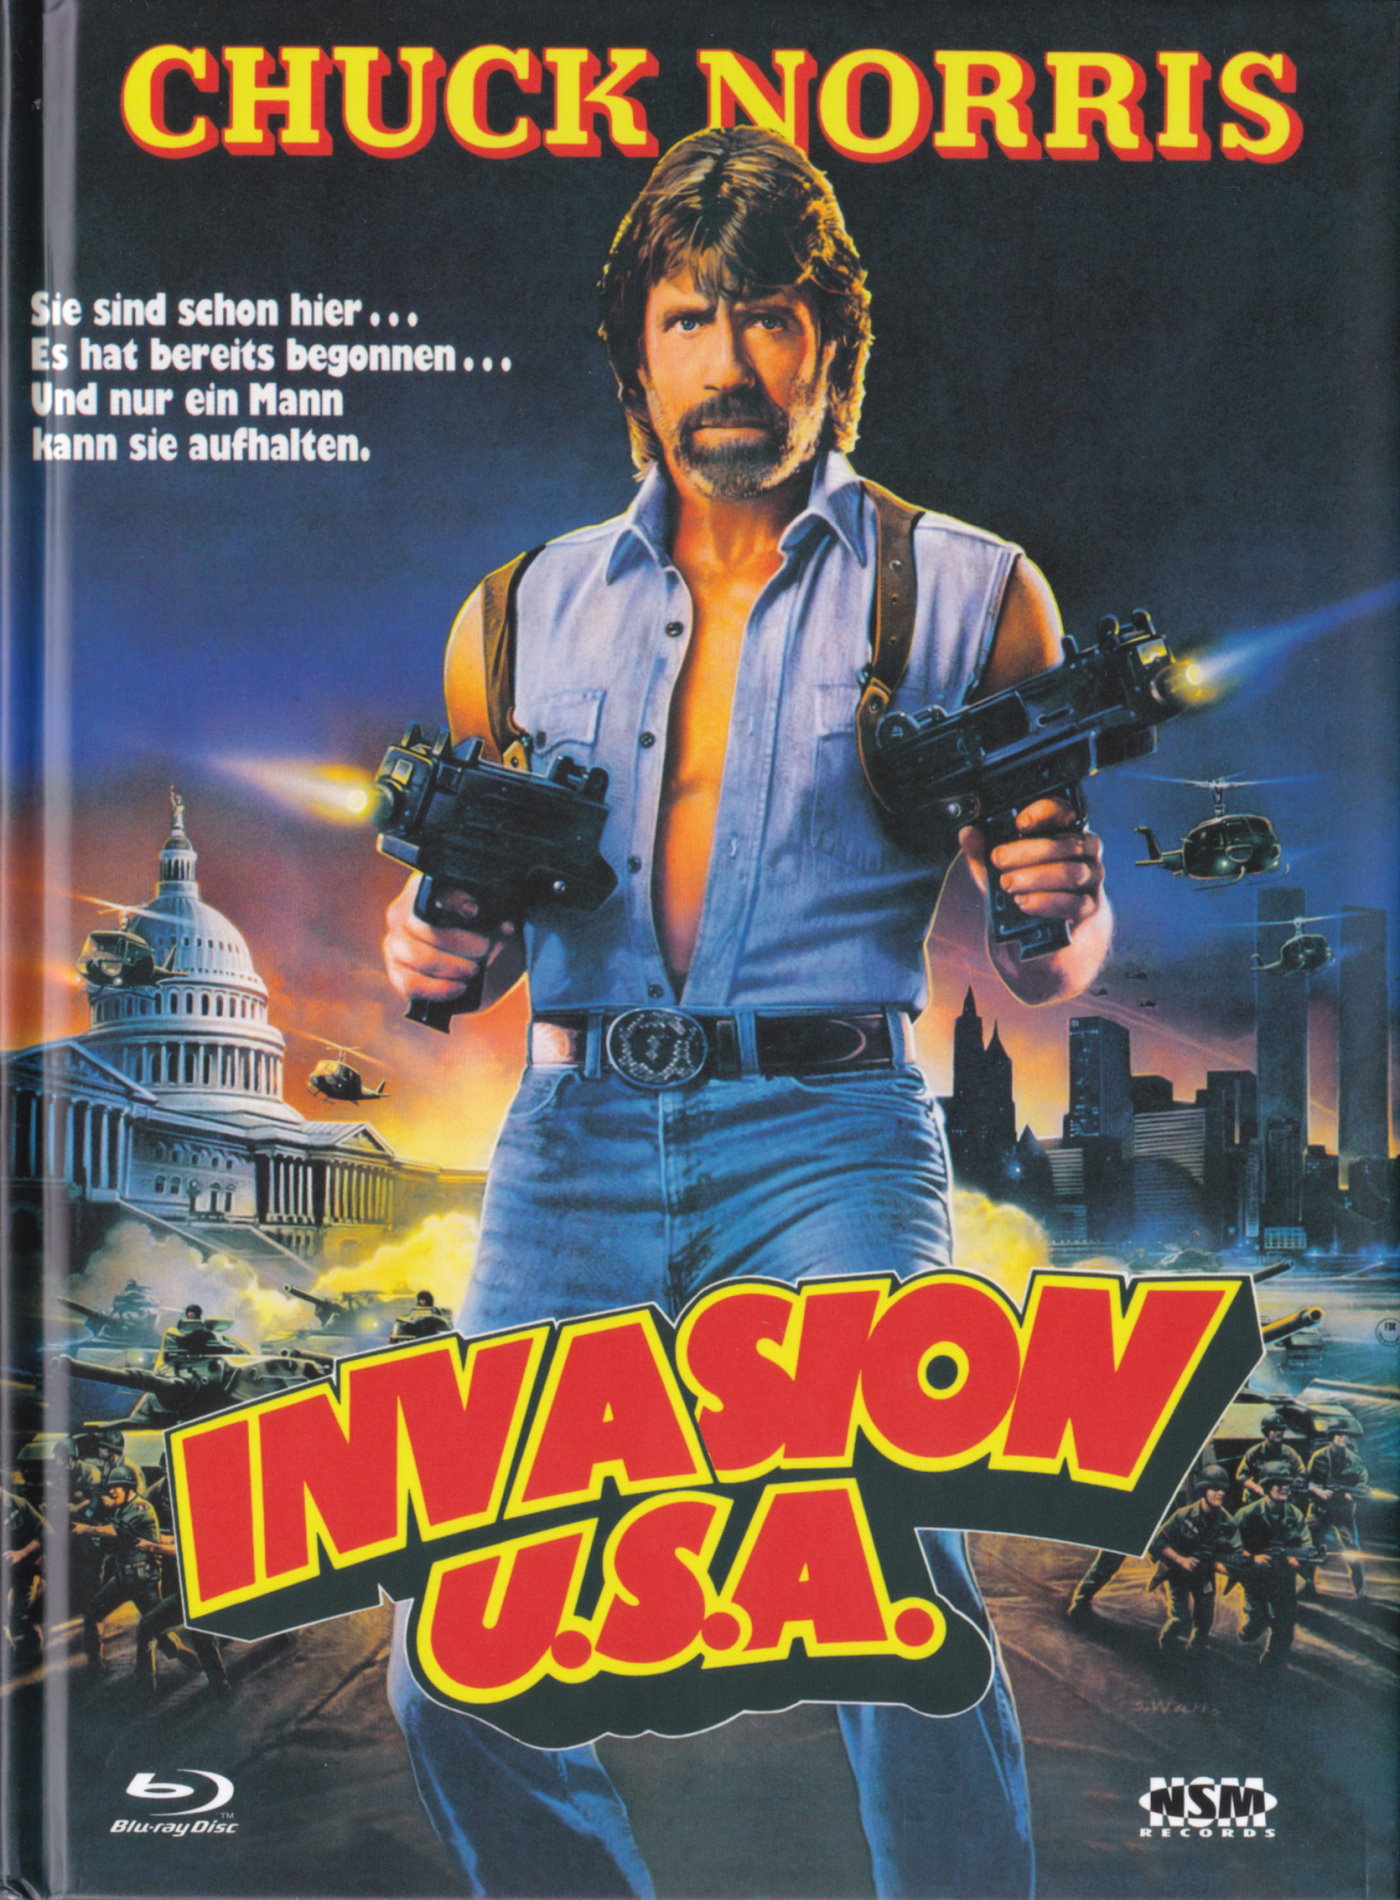 Cover - Invasion U.S.A..jpg